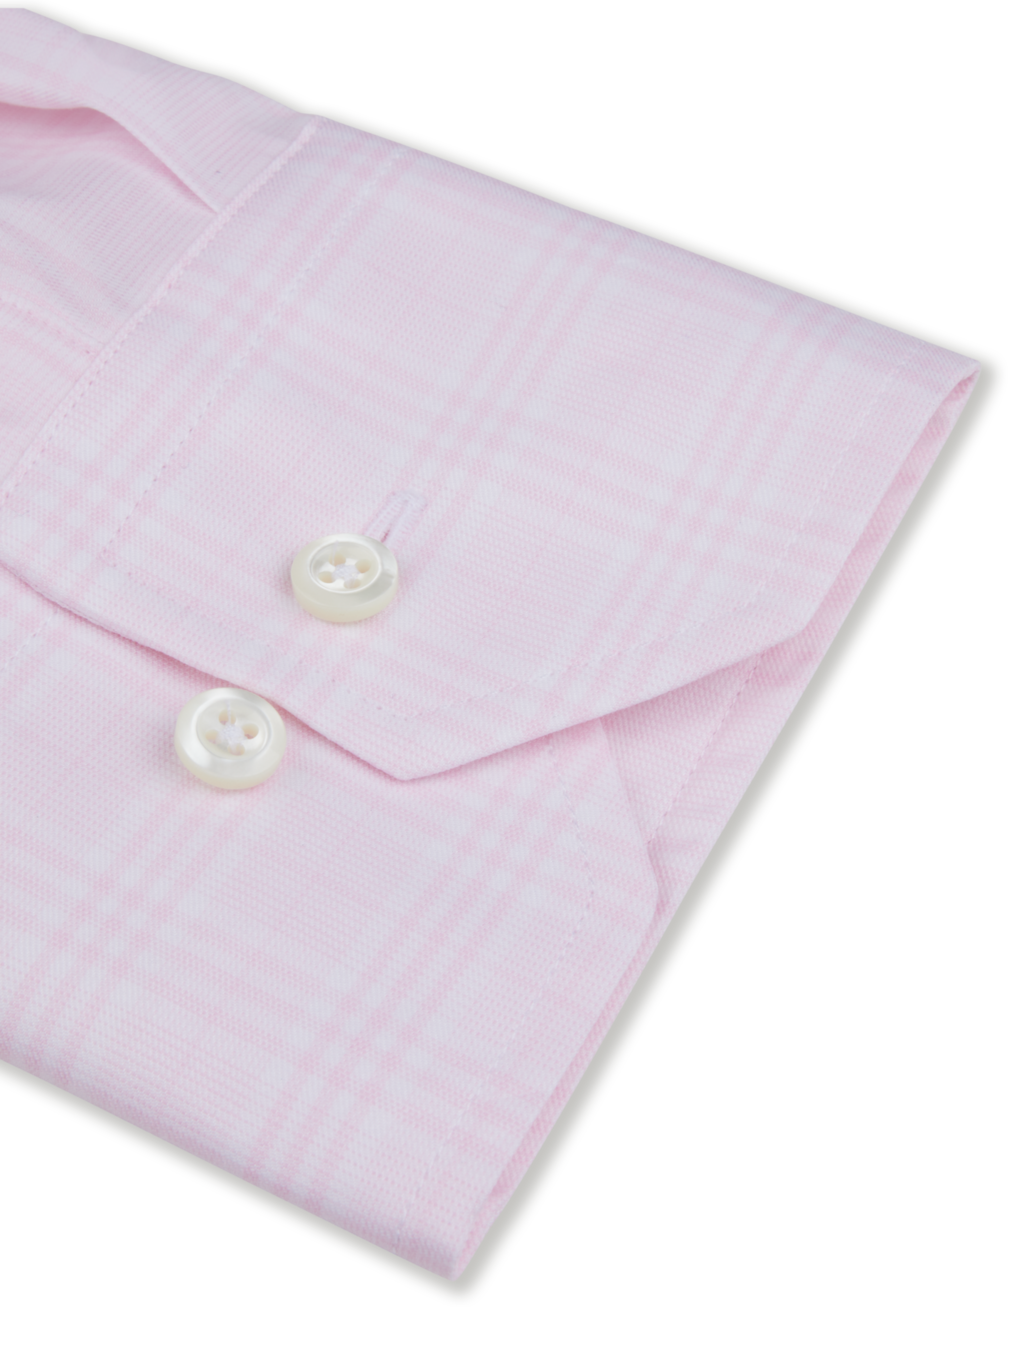 Stenströms Pink Checked Stretch Shirt